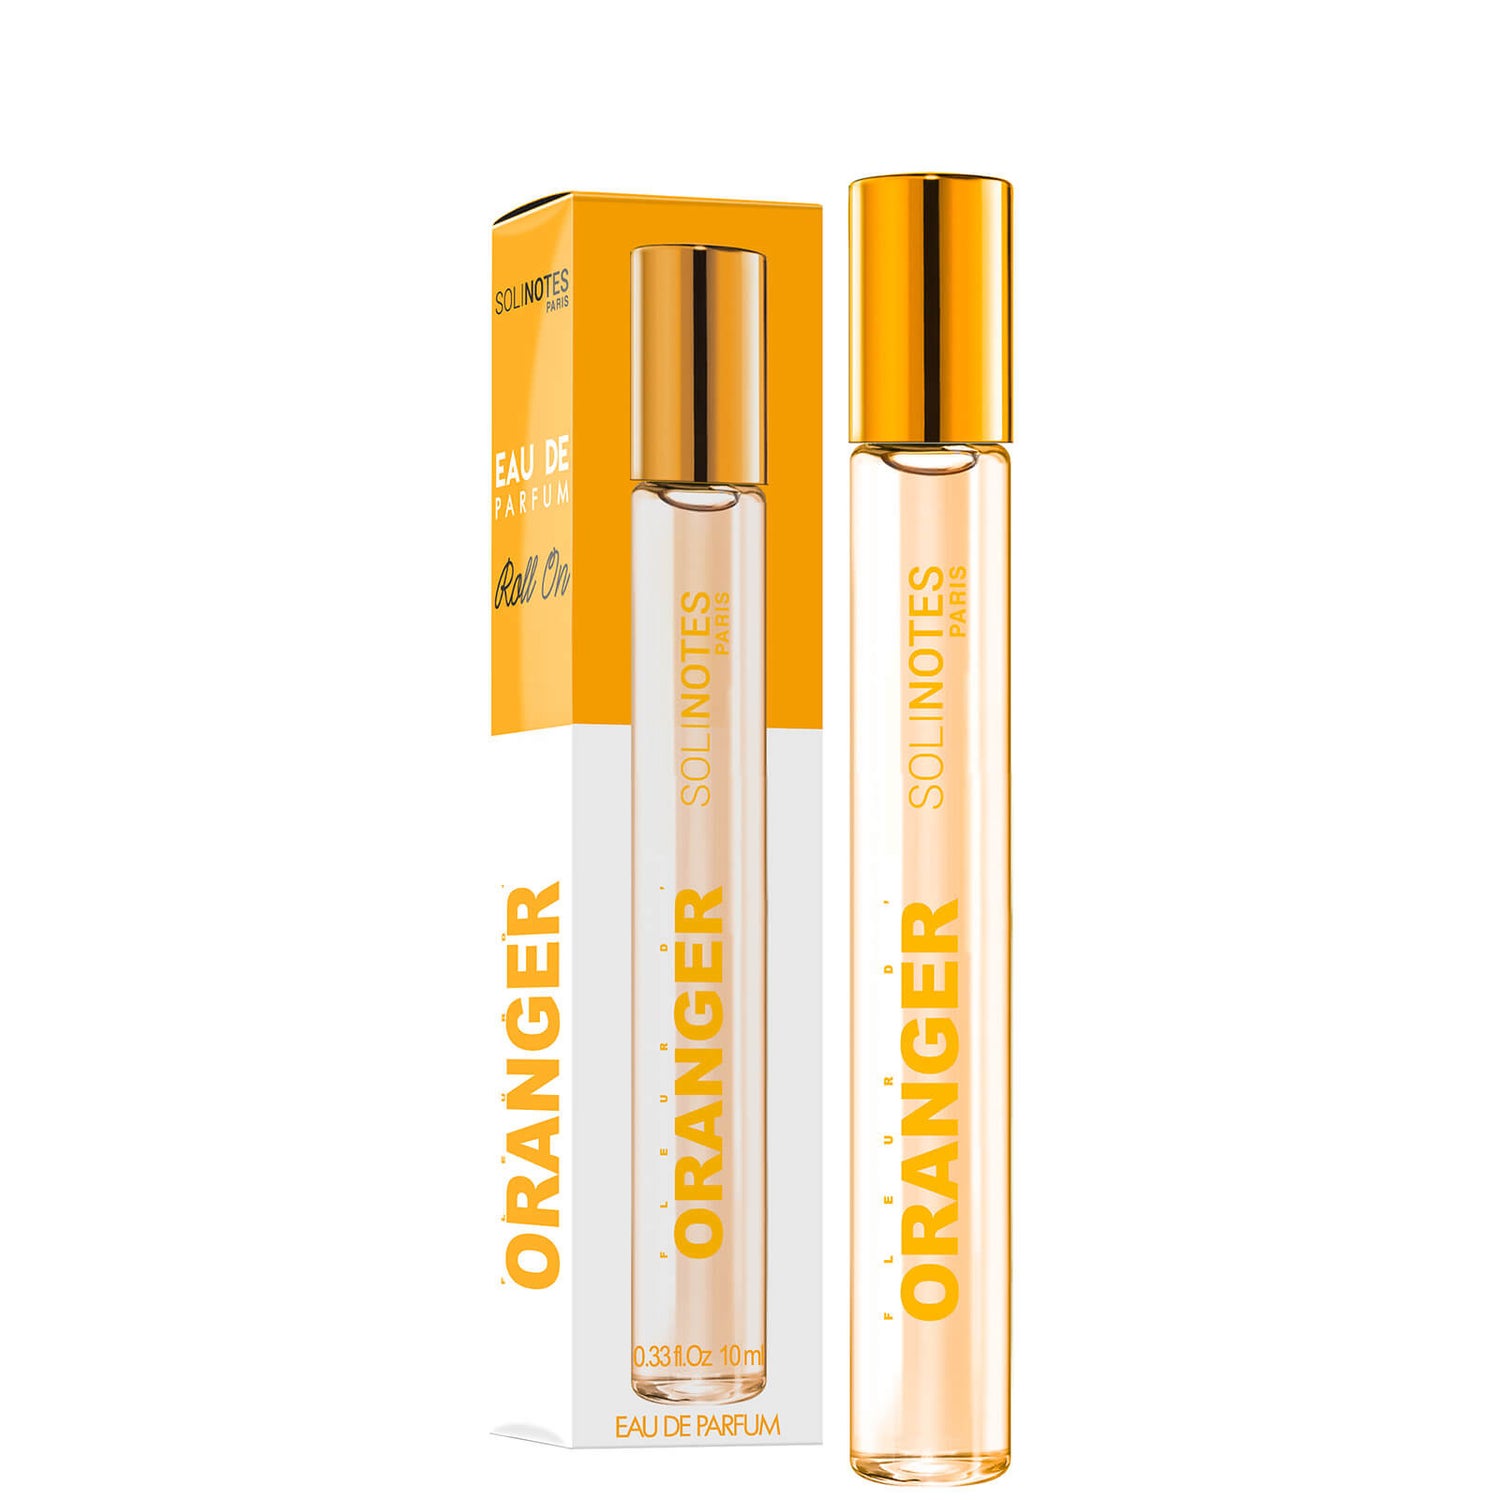 Solinotes Eau de Parfum Roll-On - Orange Blossom 0.33 oz